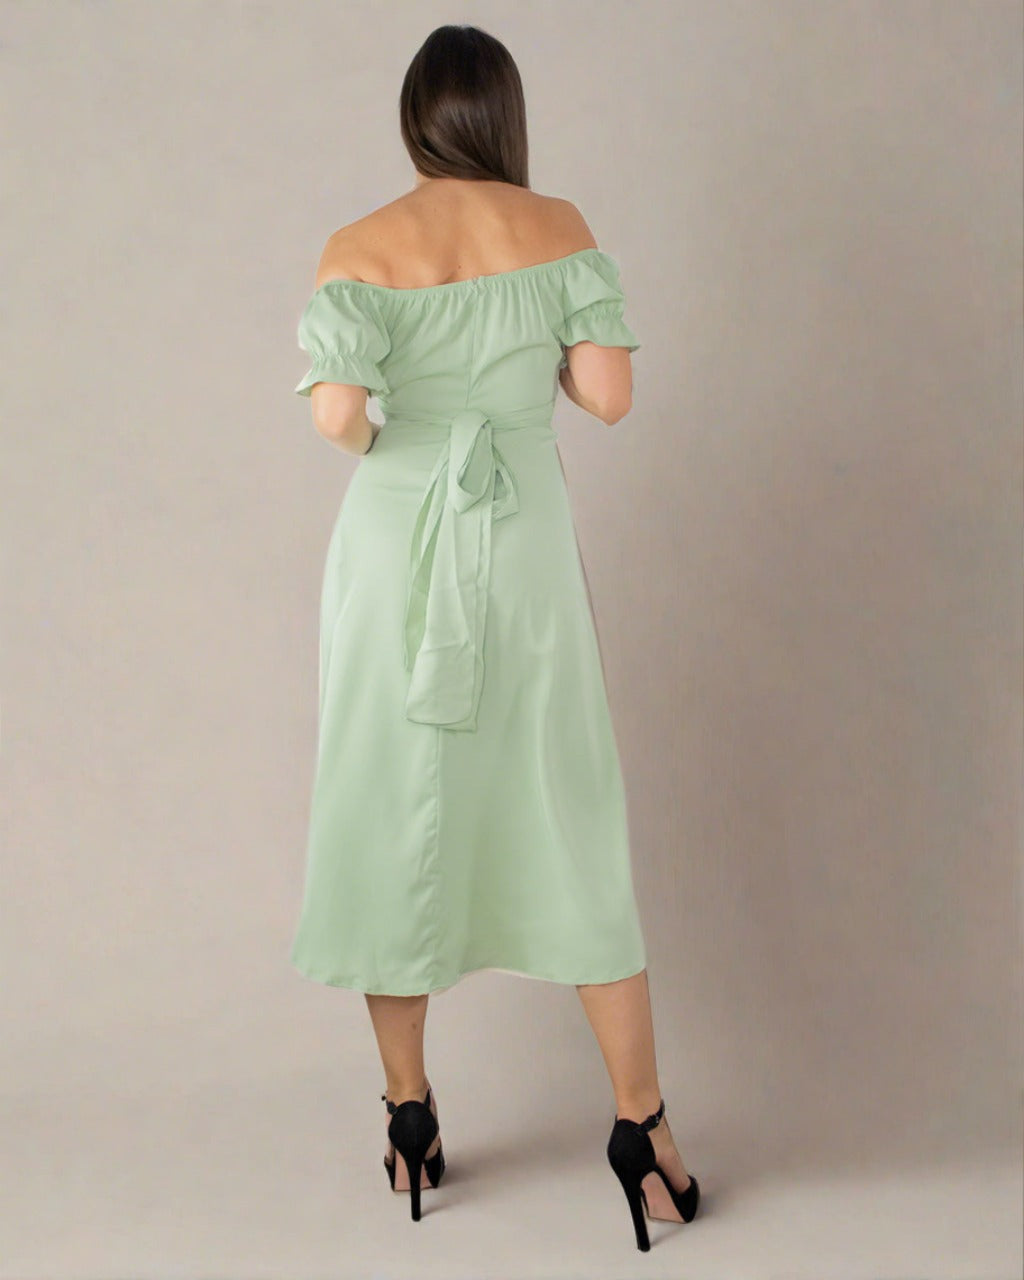 Sophia Green off Shoulder Dress - Sage Green Cocktail Dress